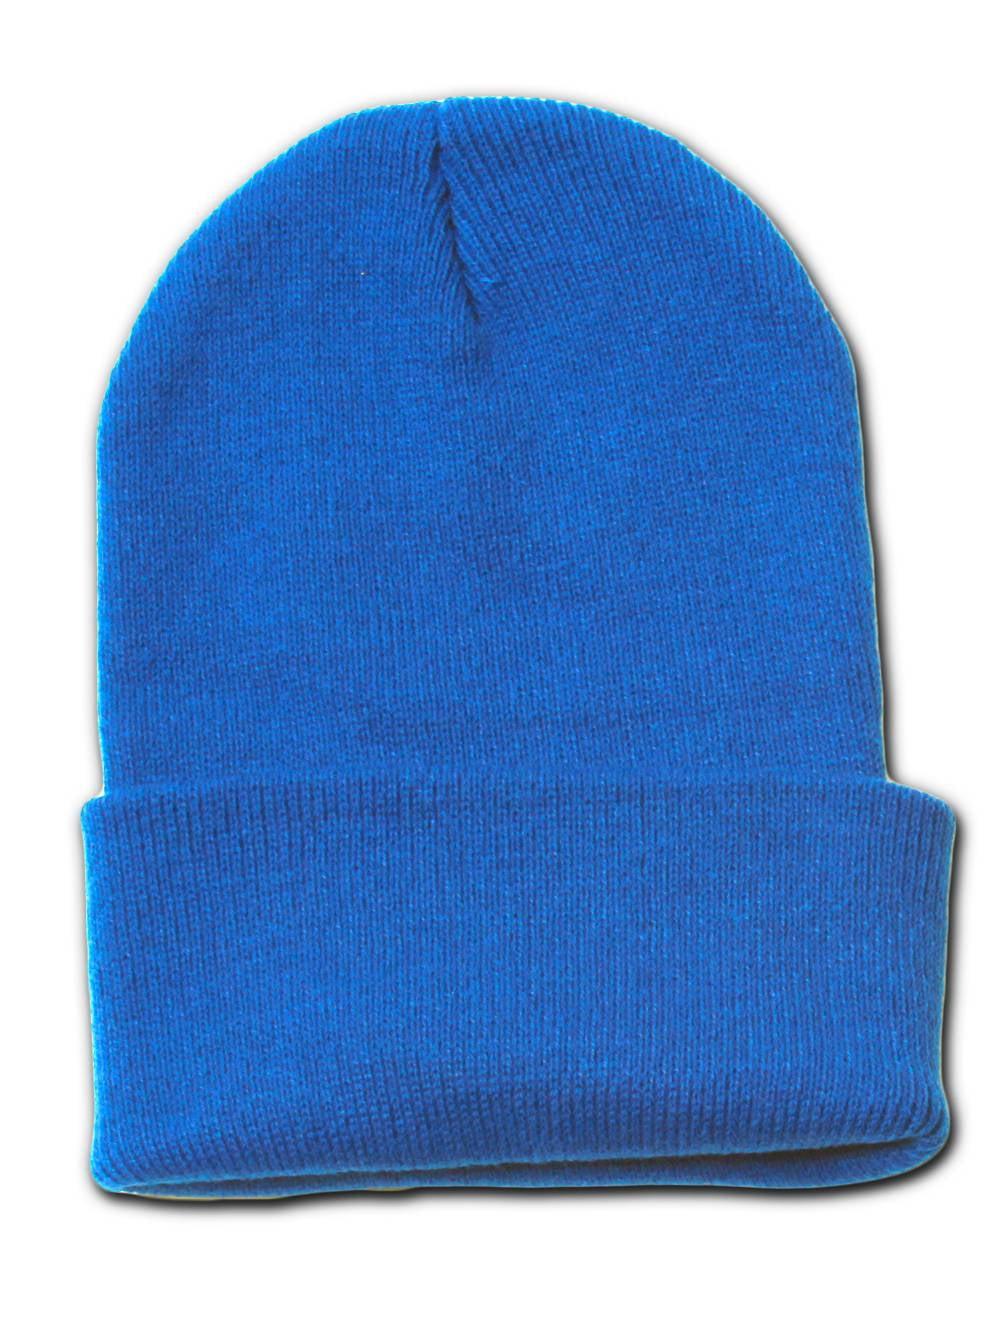 Plain Blank Long Beanie Cap Hat - Royal Blue